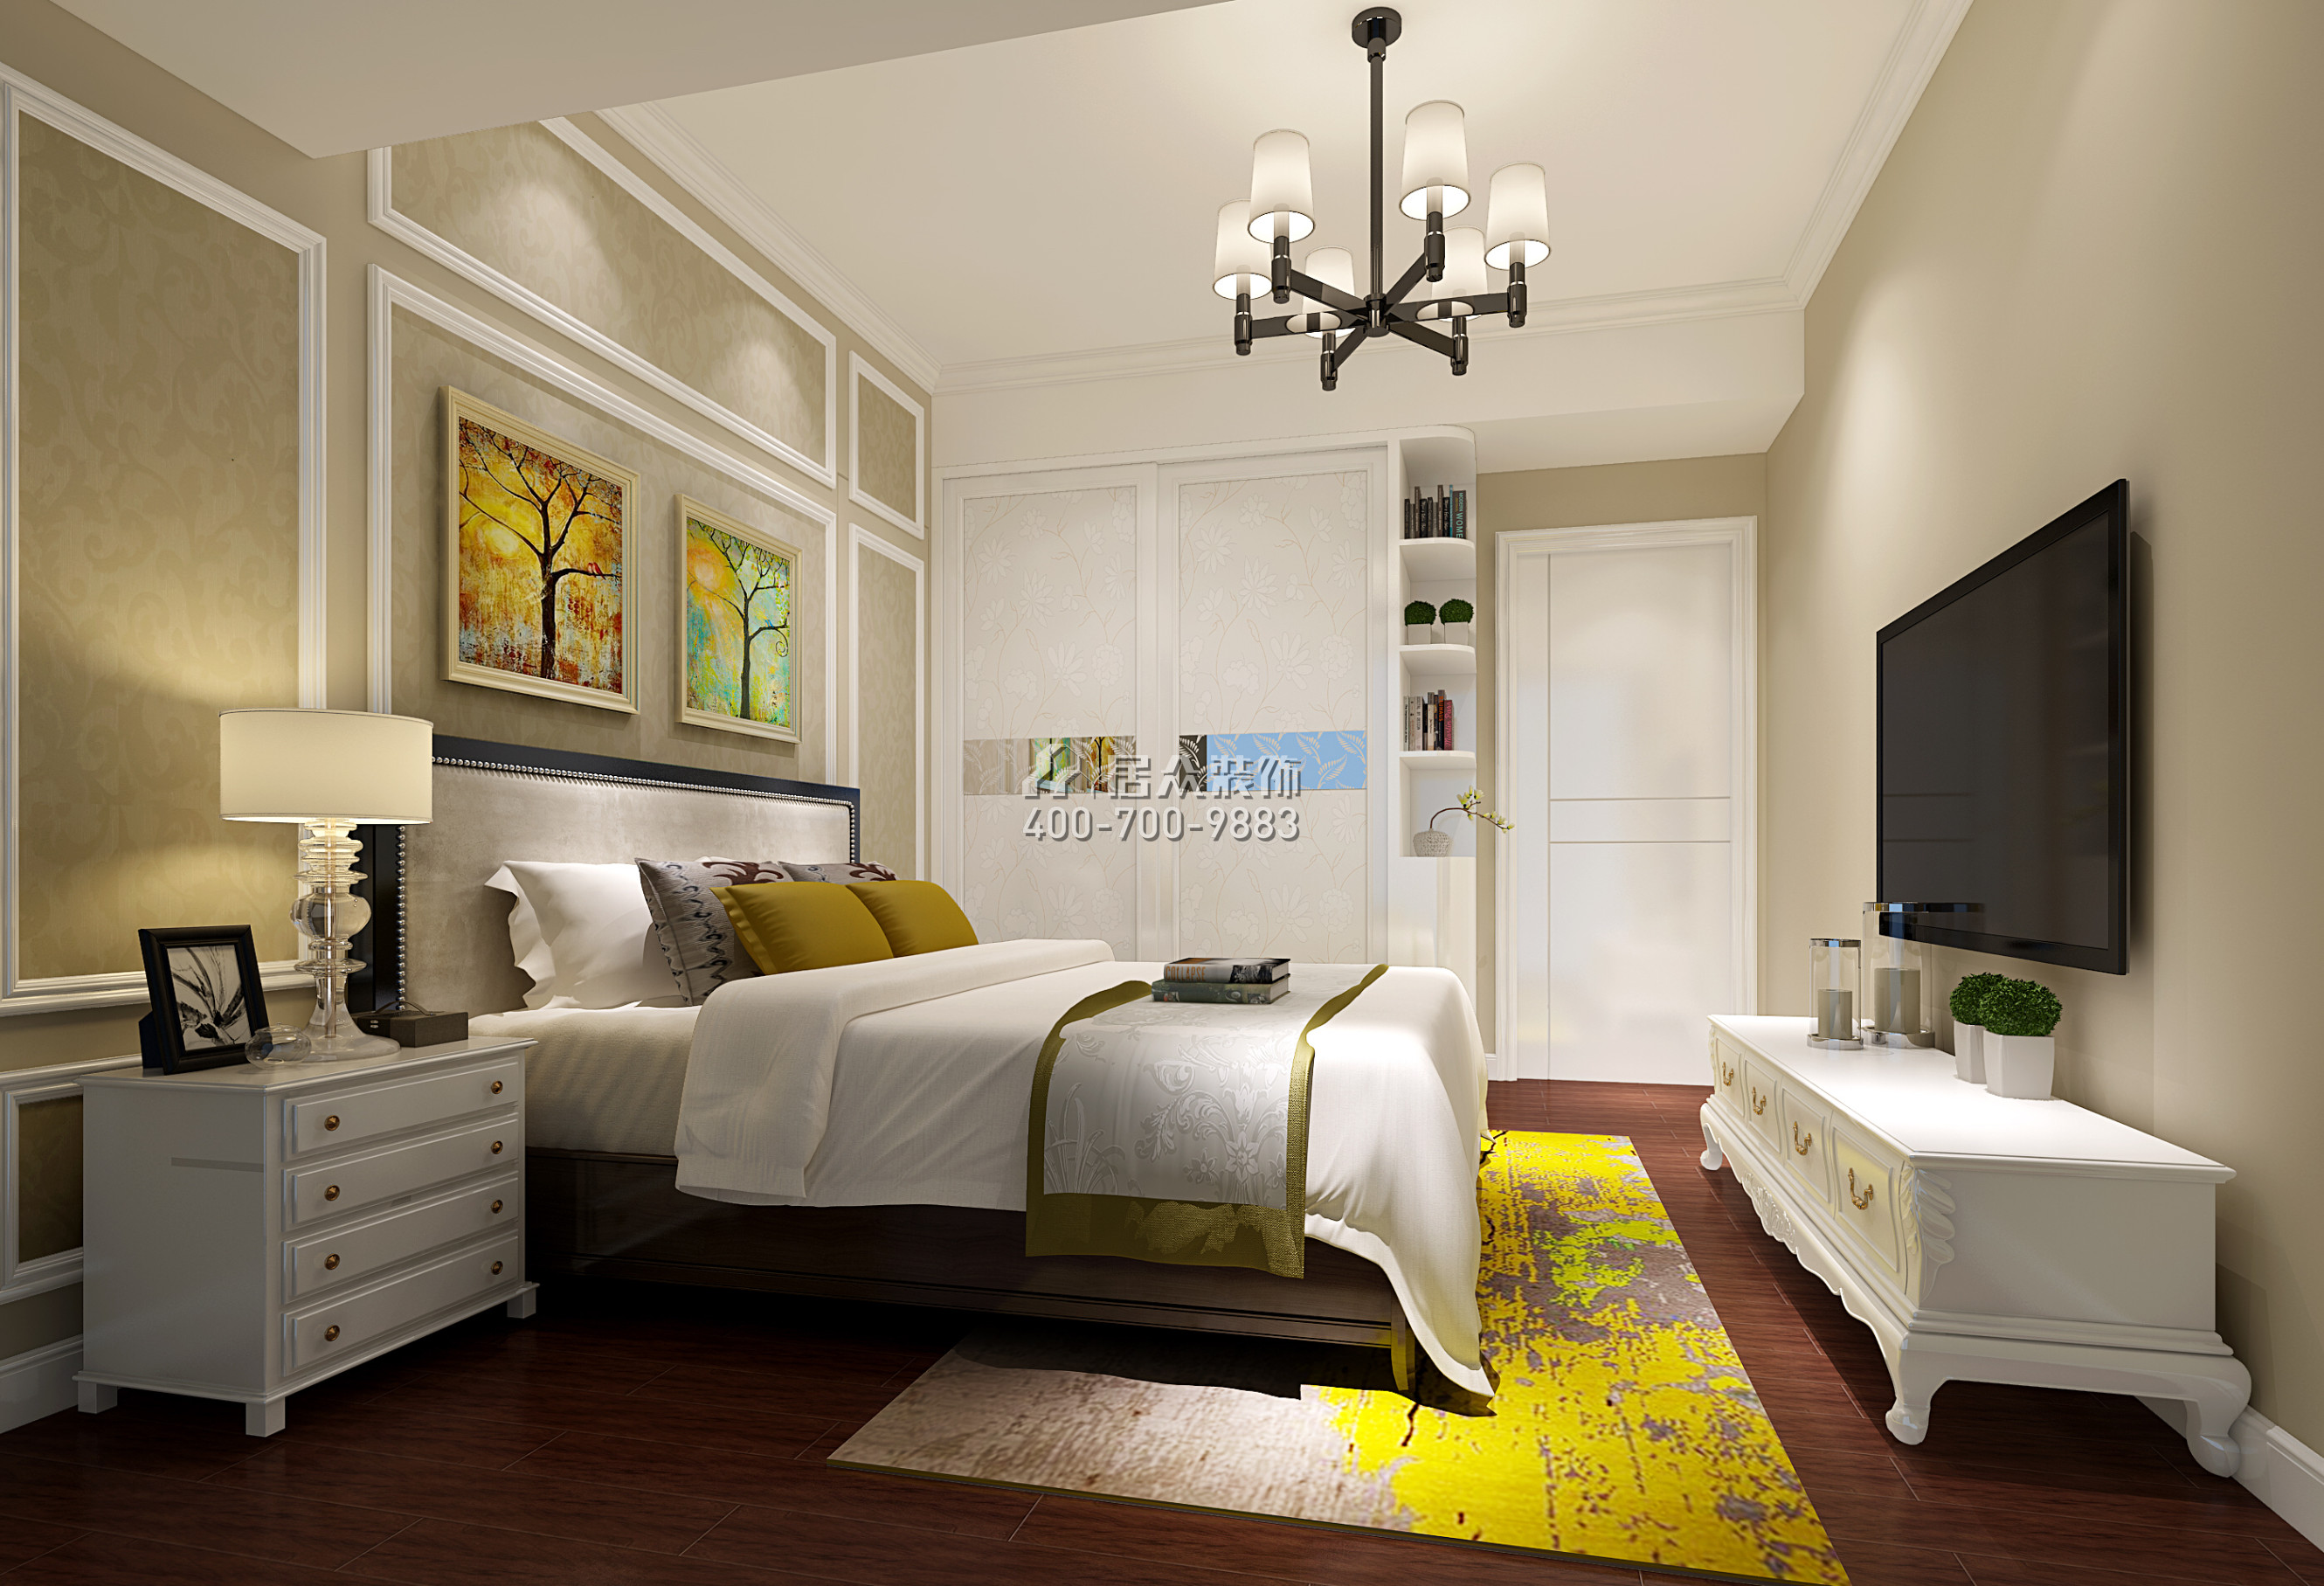 金地鷺湖1號89平方米現代簡約風格平層戶型臥室裝修效果圖